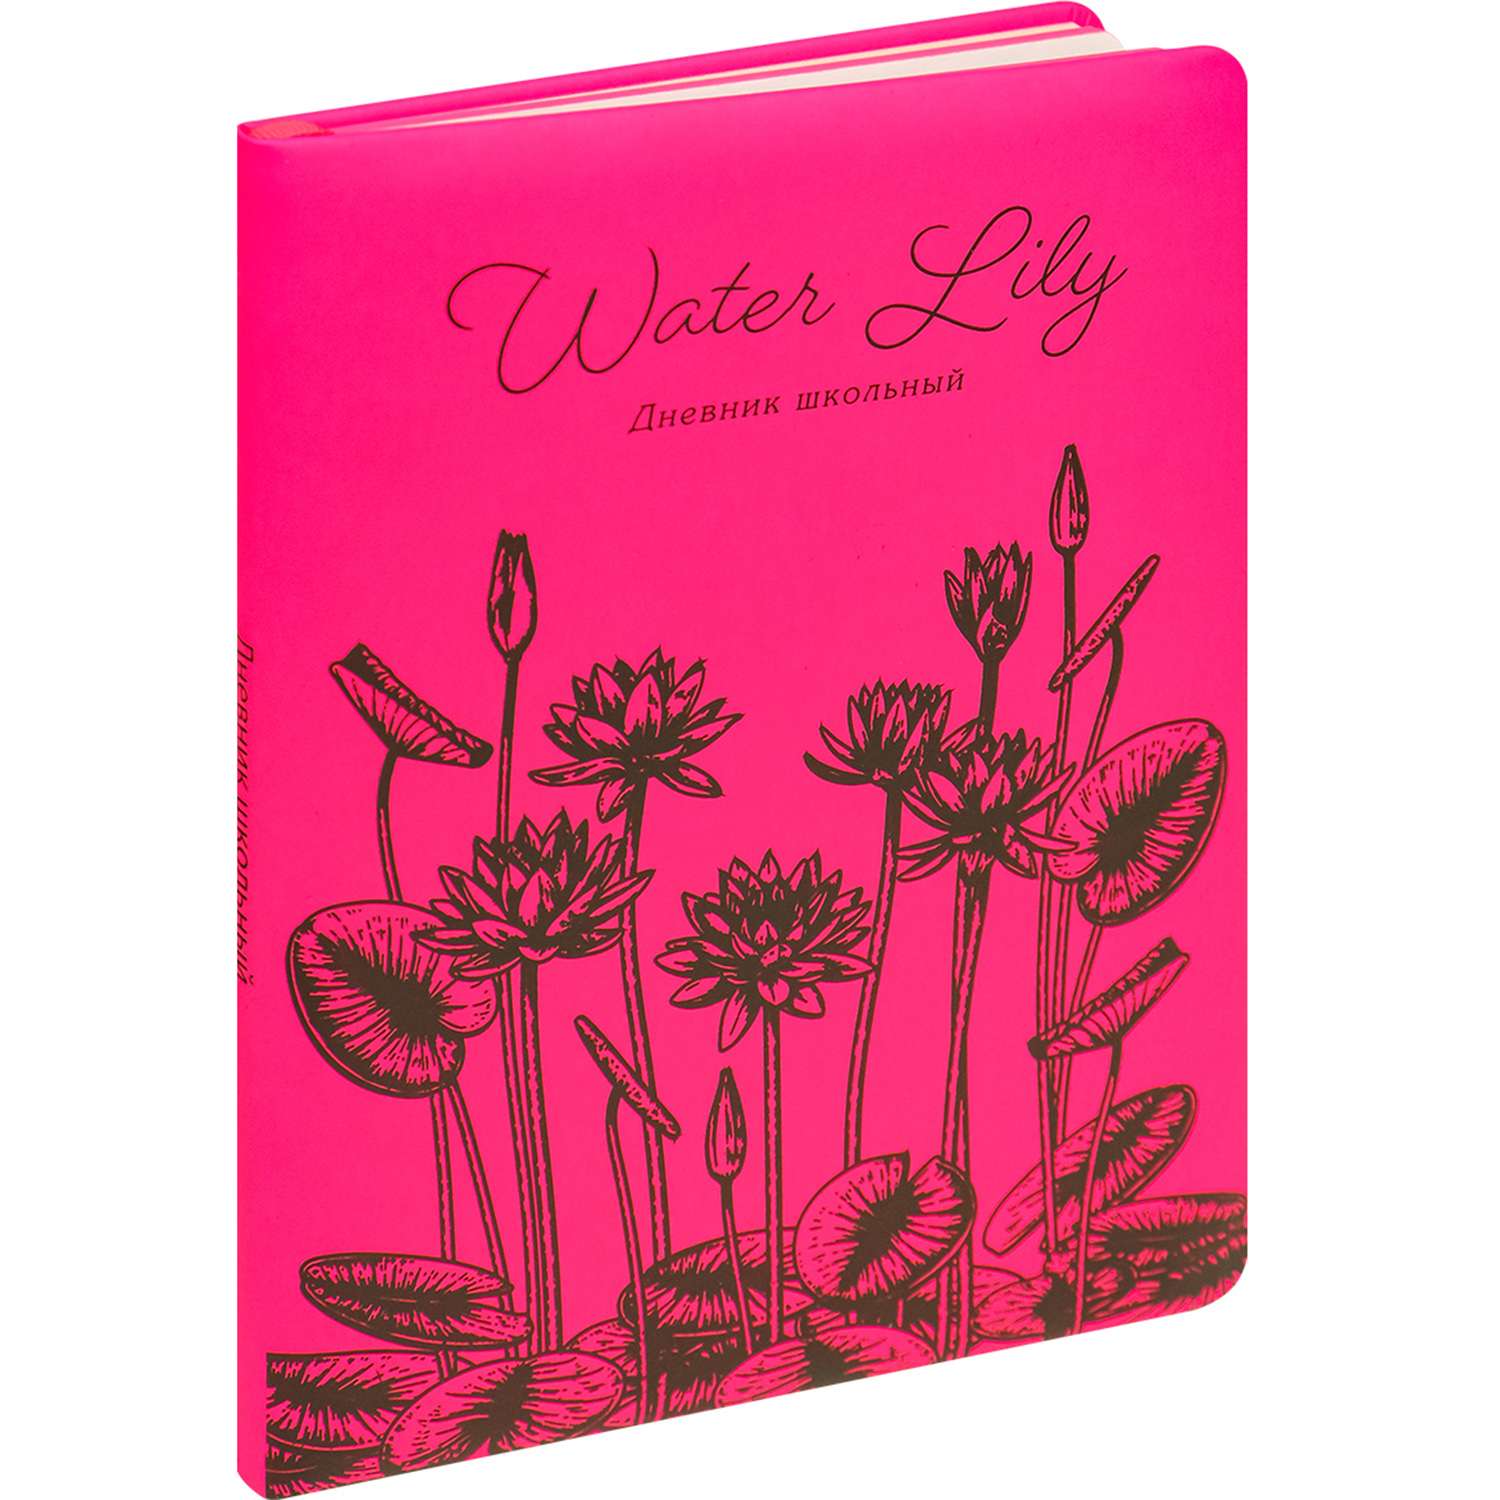 Дневник школьный Prof-Press Water lily 48 листов кожзам 1-11 класс - фото 1